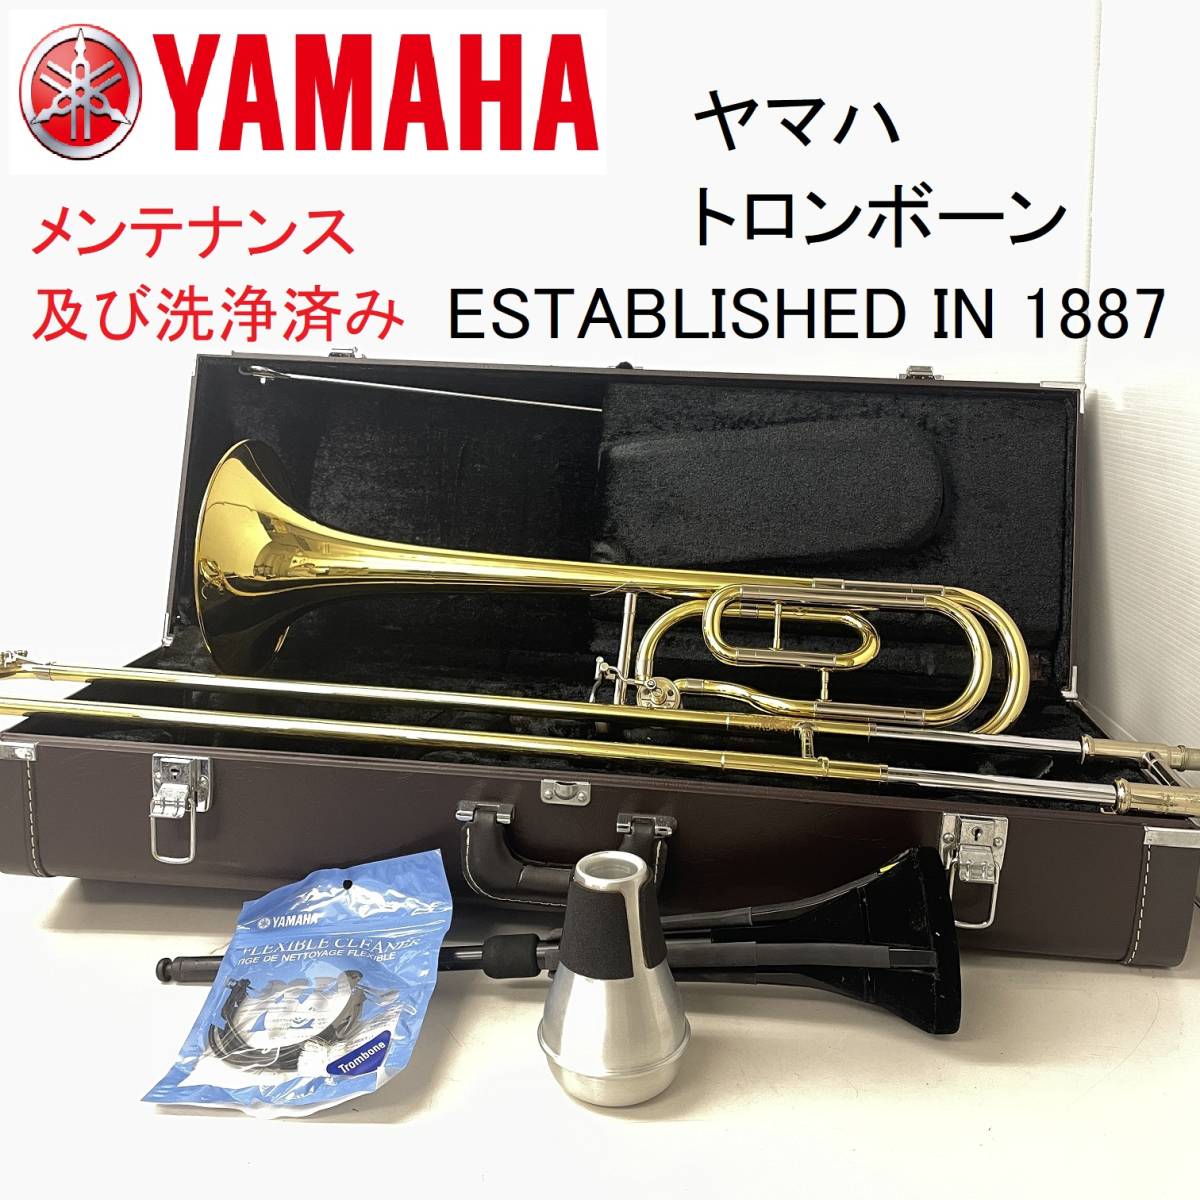 YAMAHA/ヤマハ トロンボーン ESTABLISHED IN 1887 メンテナンス及び